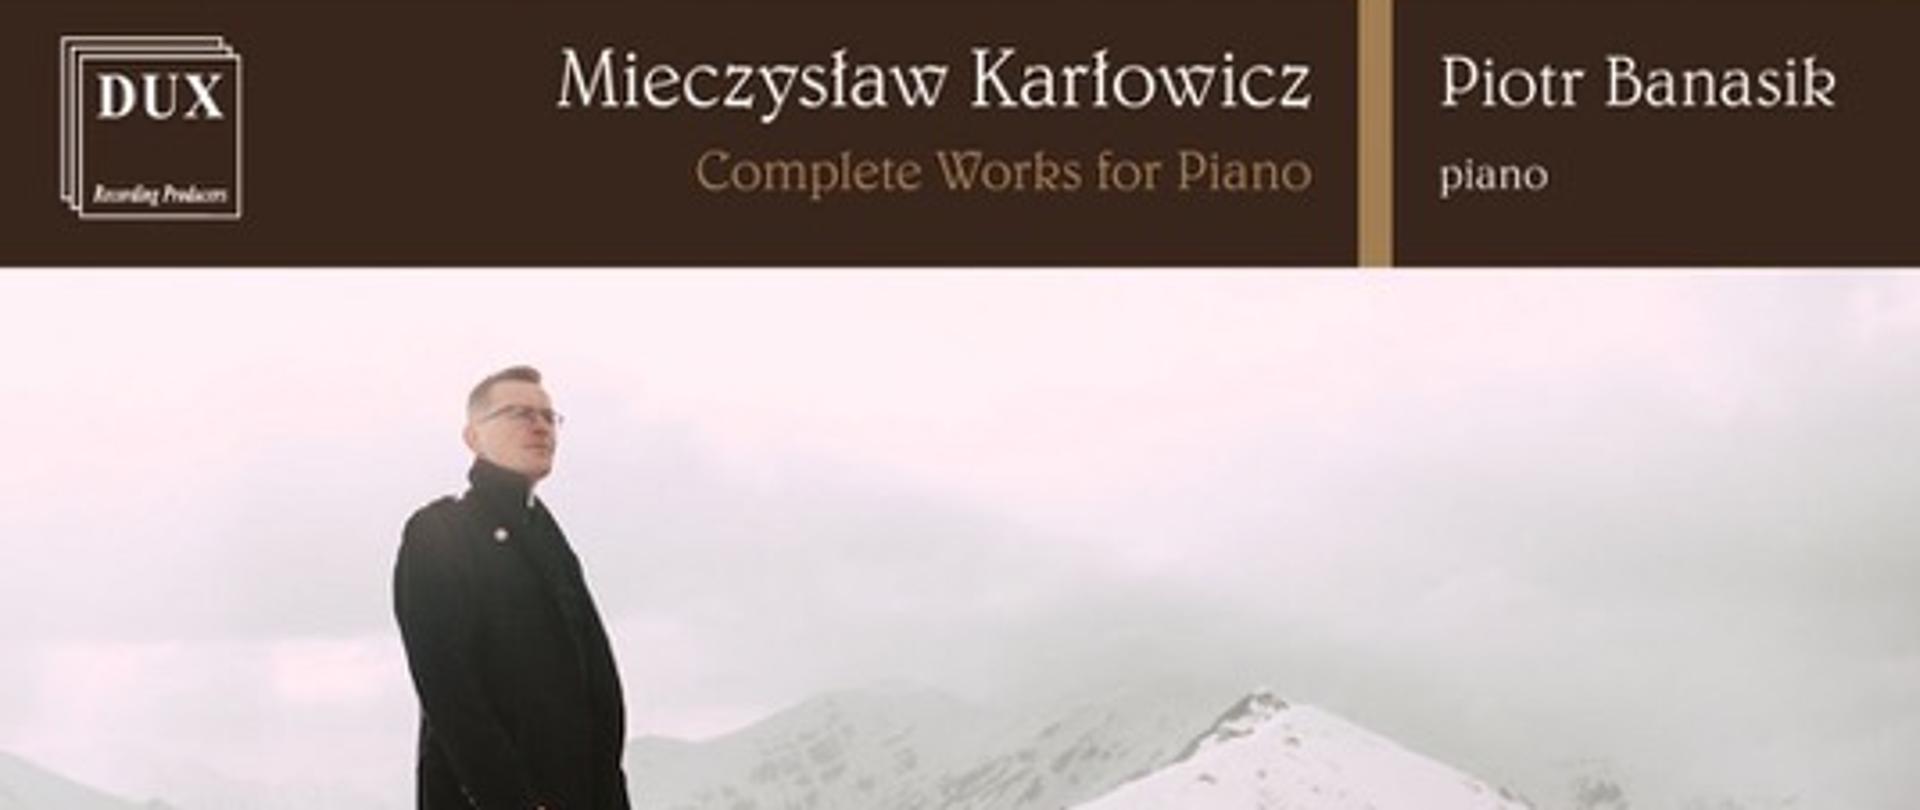 Okładka albumu płytowego wydanego przez naszą Szkołę, zawierający komplet utworów fortepianowych naszego Patrona nagrany przez dr. Piotra Banasika widocznego na zdjęciu na tle gór